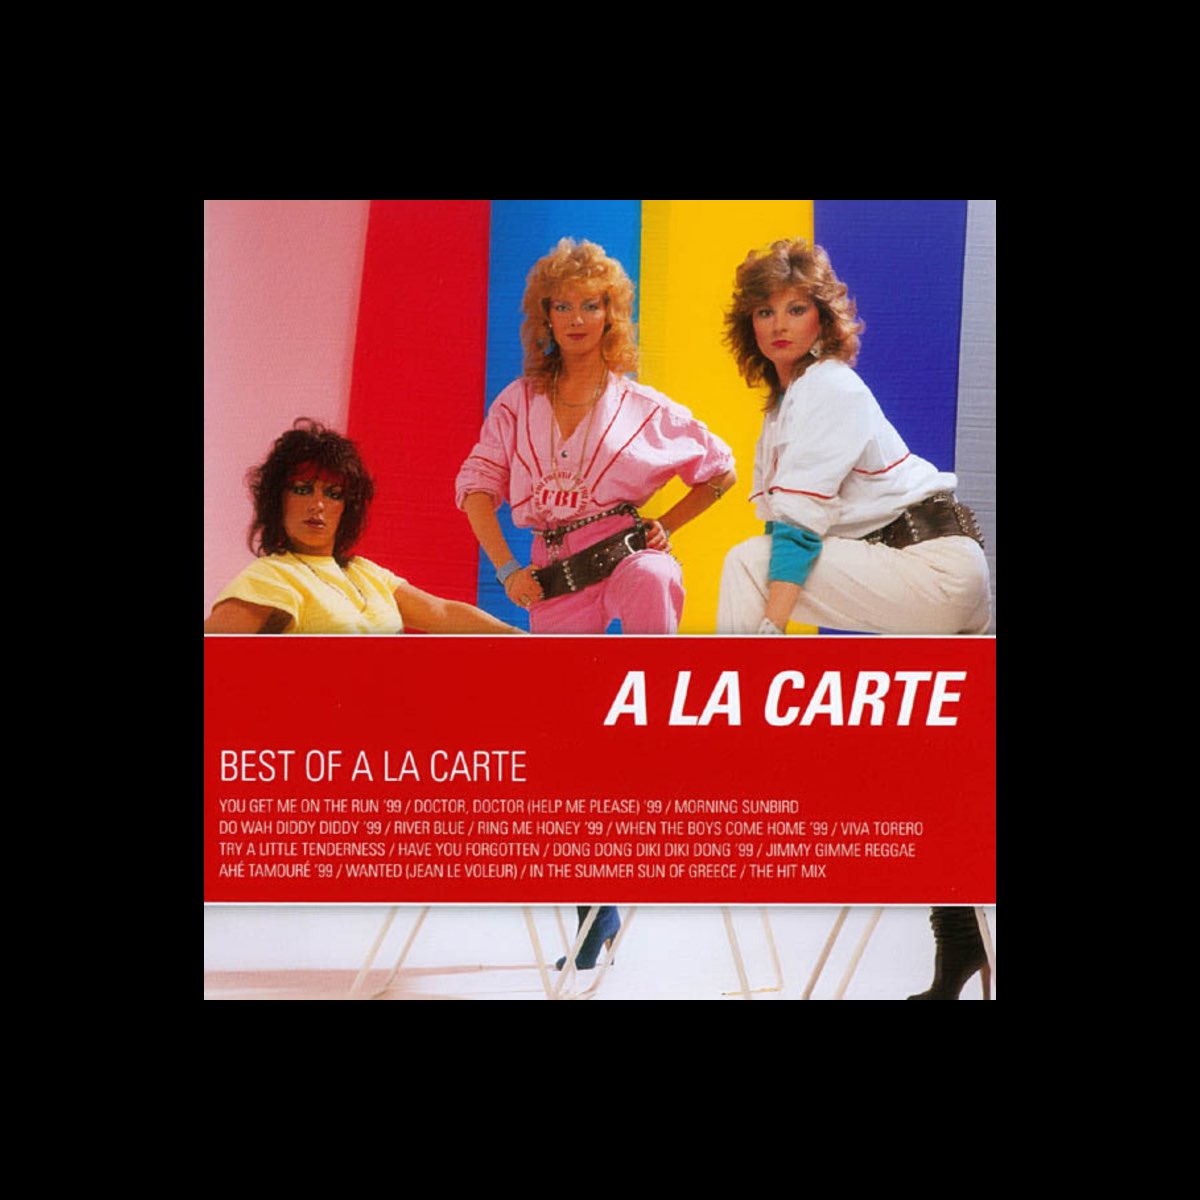 Best of A la Carte - Album by A la Carte - Apple Music